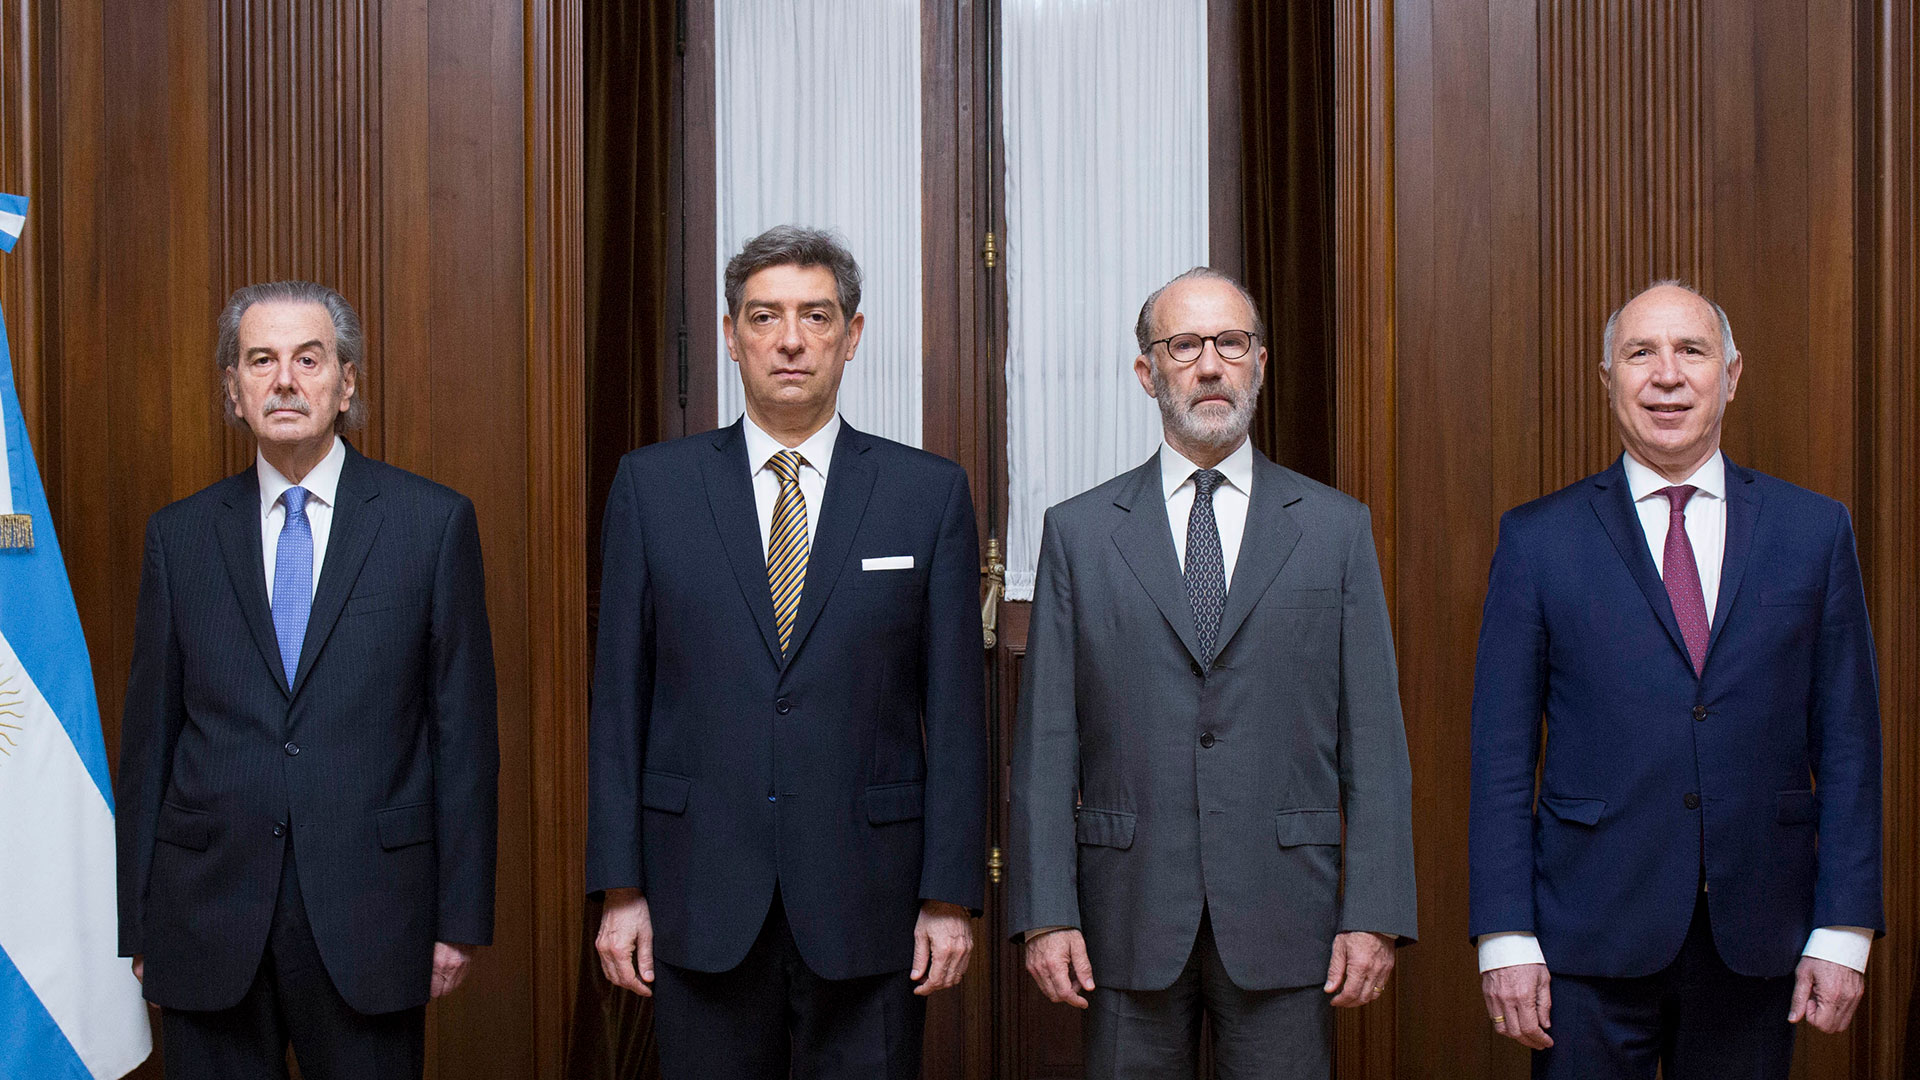 Los jueces de la Corte Suprema de Justicia de la Nación: Juan Carlos Maqueda, Horacio Rosatti, Carlos Rosenkrantz, y Ricardo Lorenzetti
